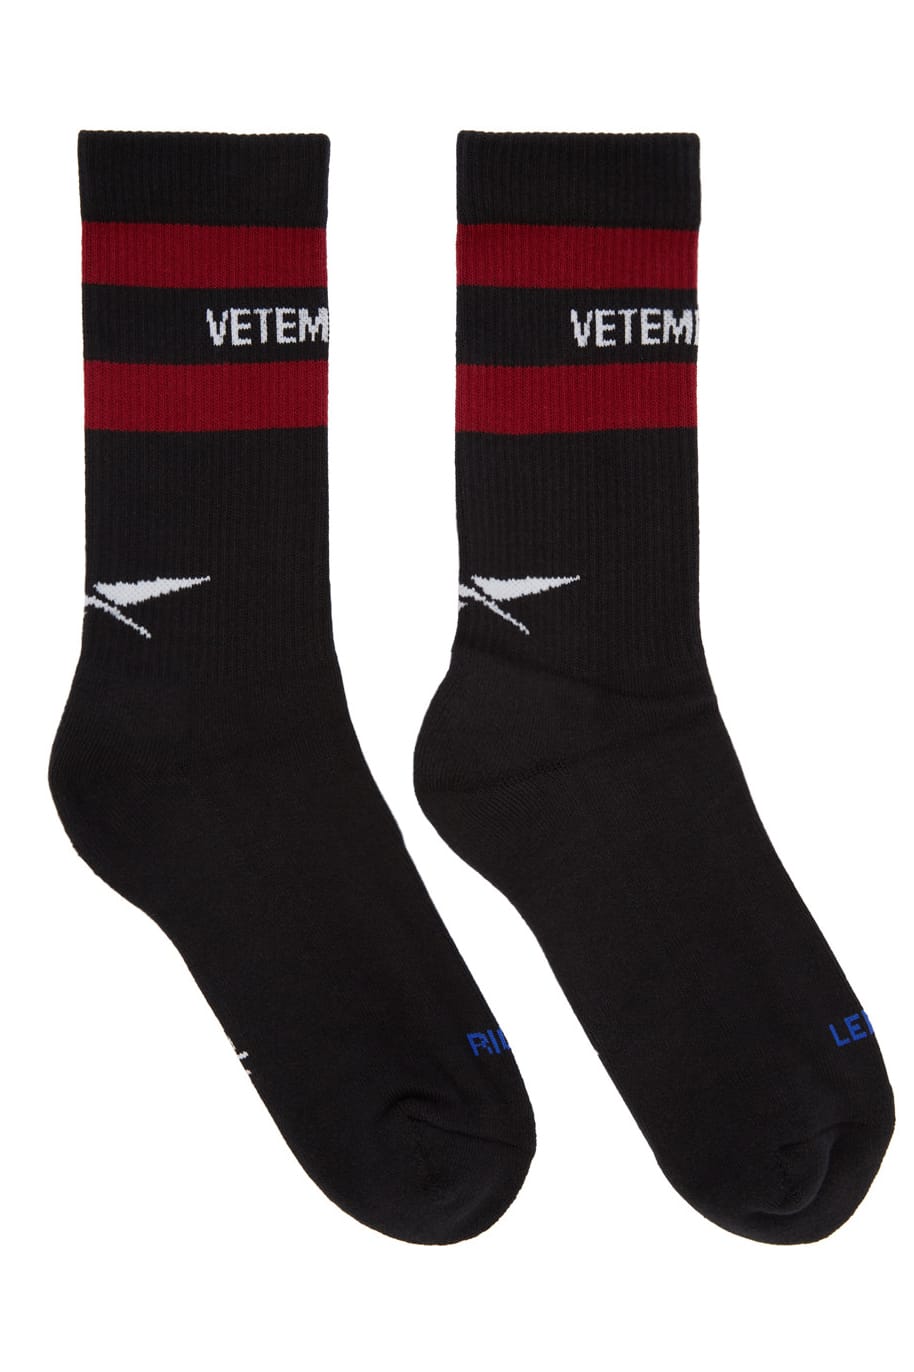 reebok vetements socks